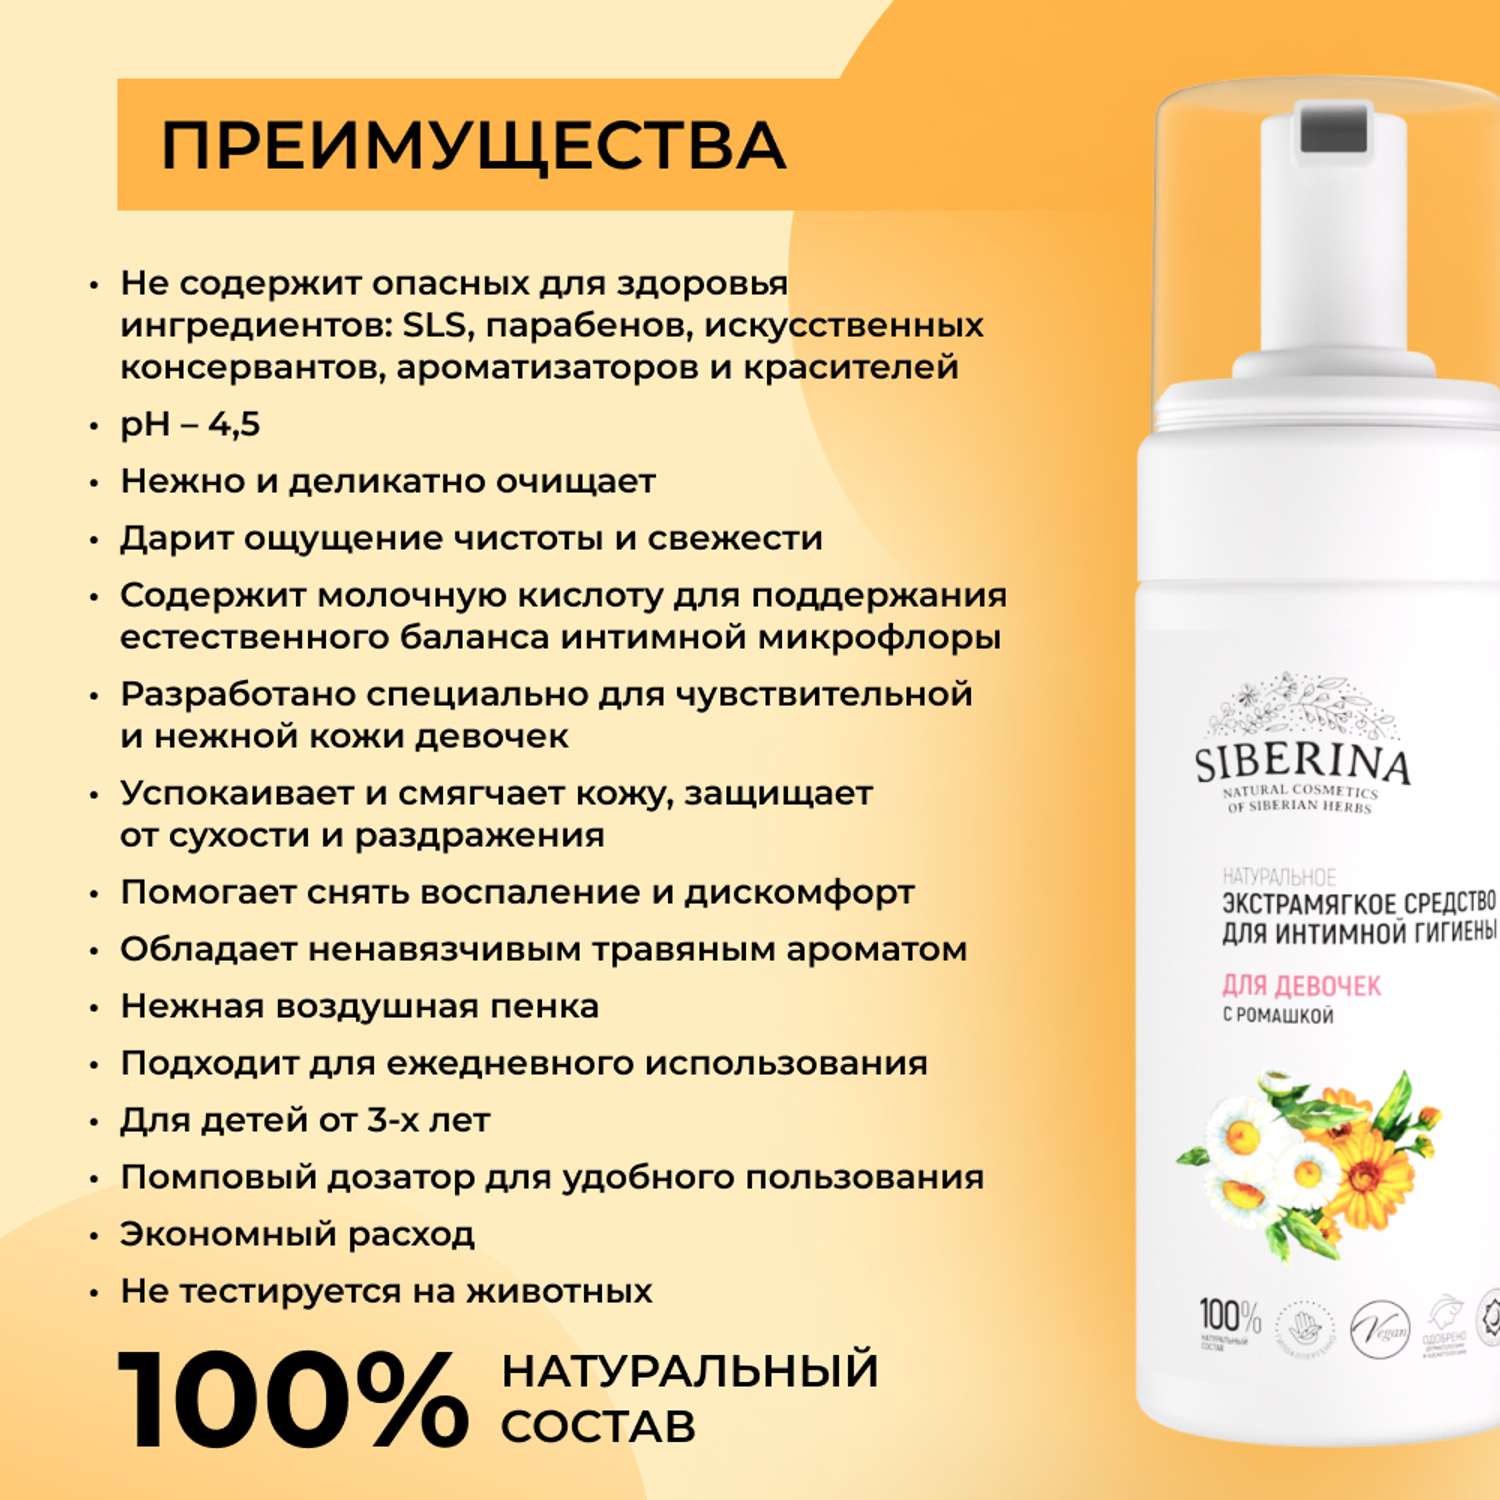 Средство для интимной гигиены Siberina натуральное экстрамягкое для девочек с ромашкой 150 мл - фото 4